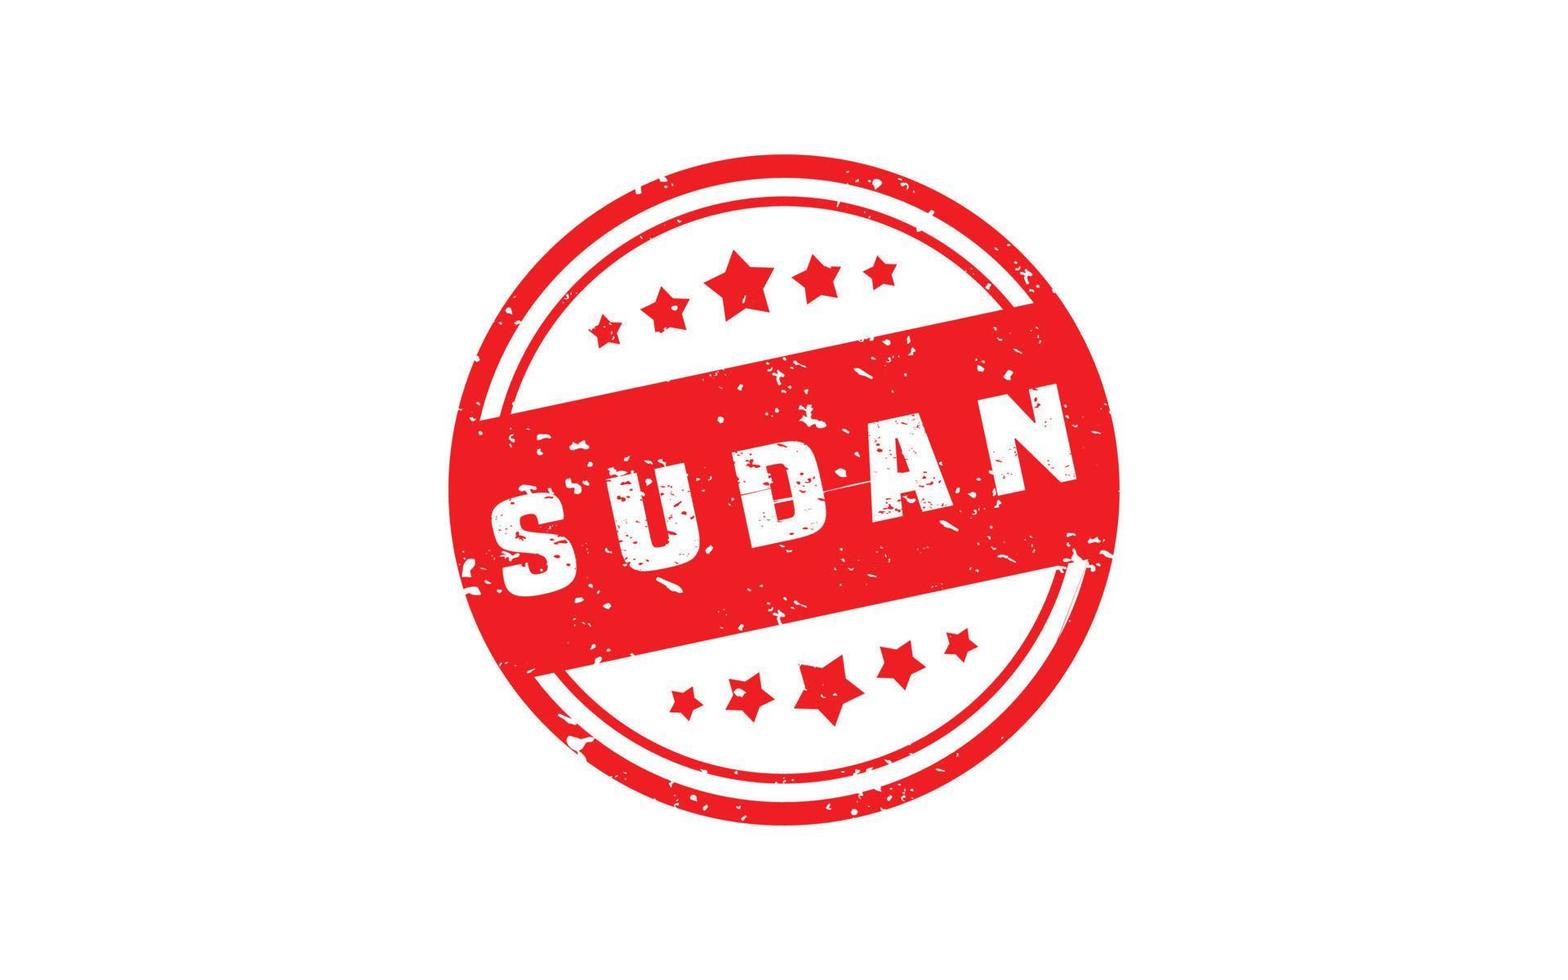 Sudán sello caucho con grunge estilo en blanco antecedentes vector